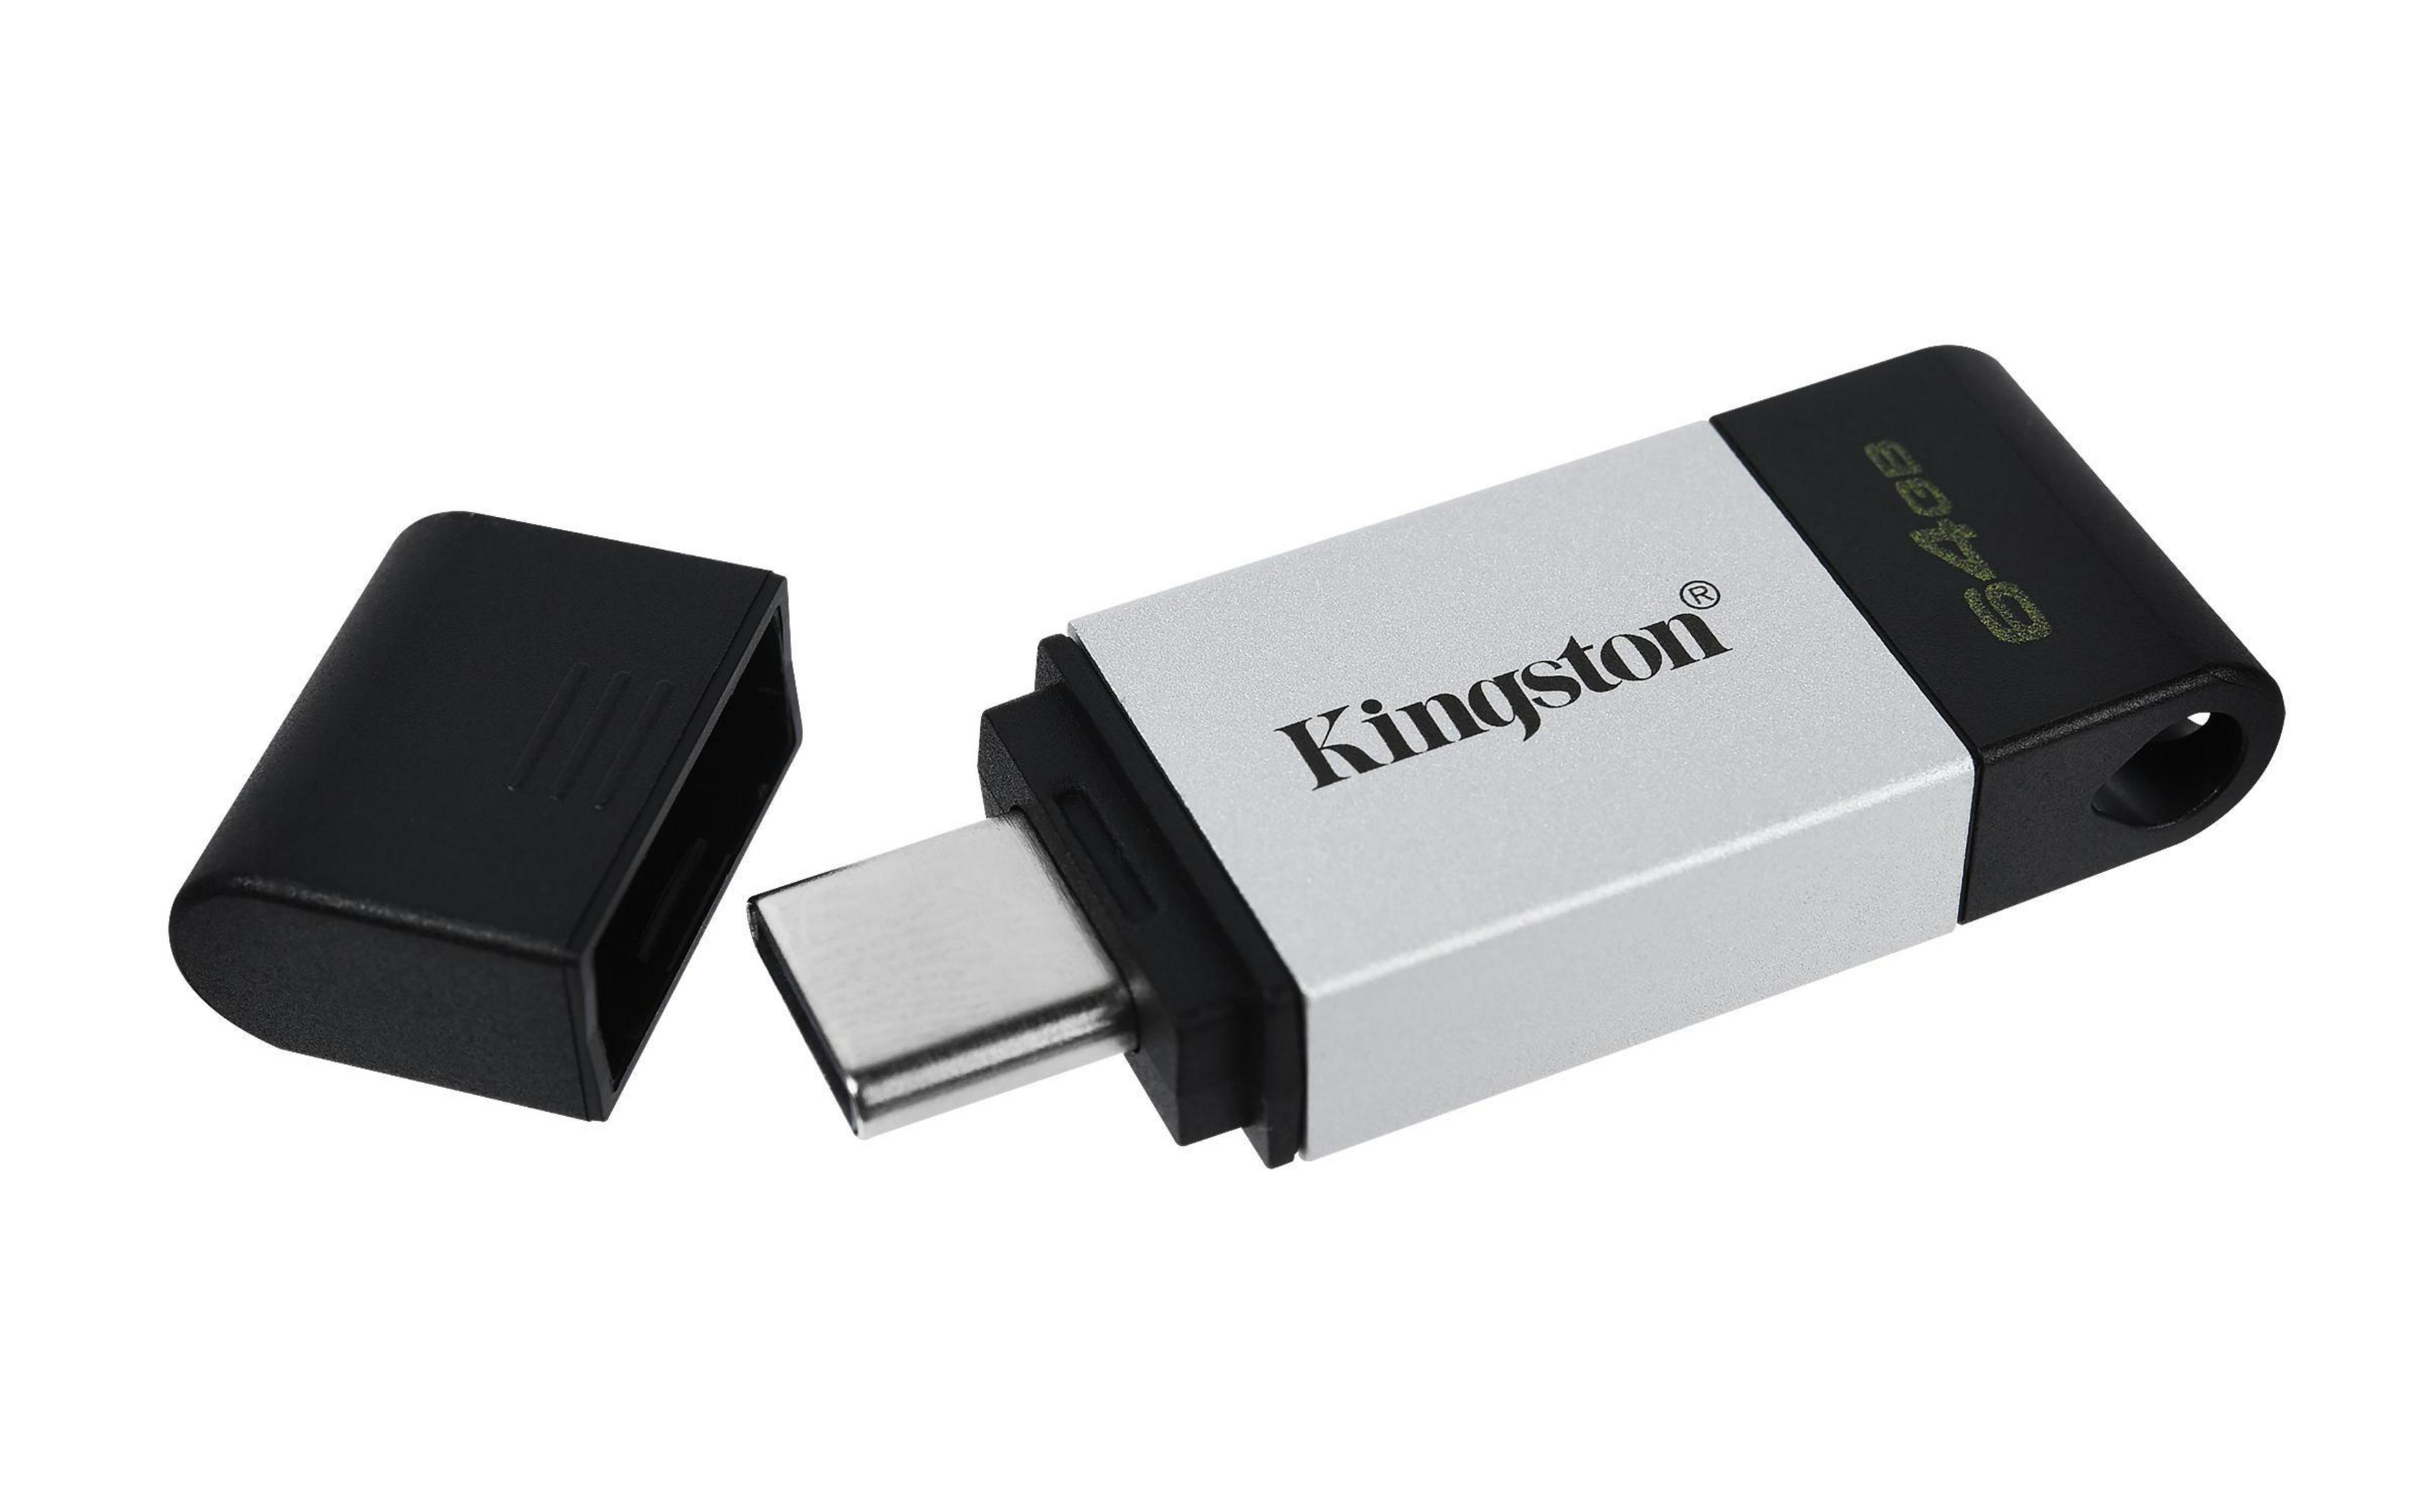 KINGSTON DT80/64GB USB Stick (Schwarz, 64 GB)